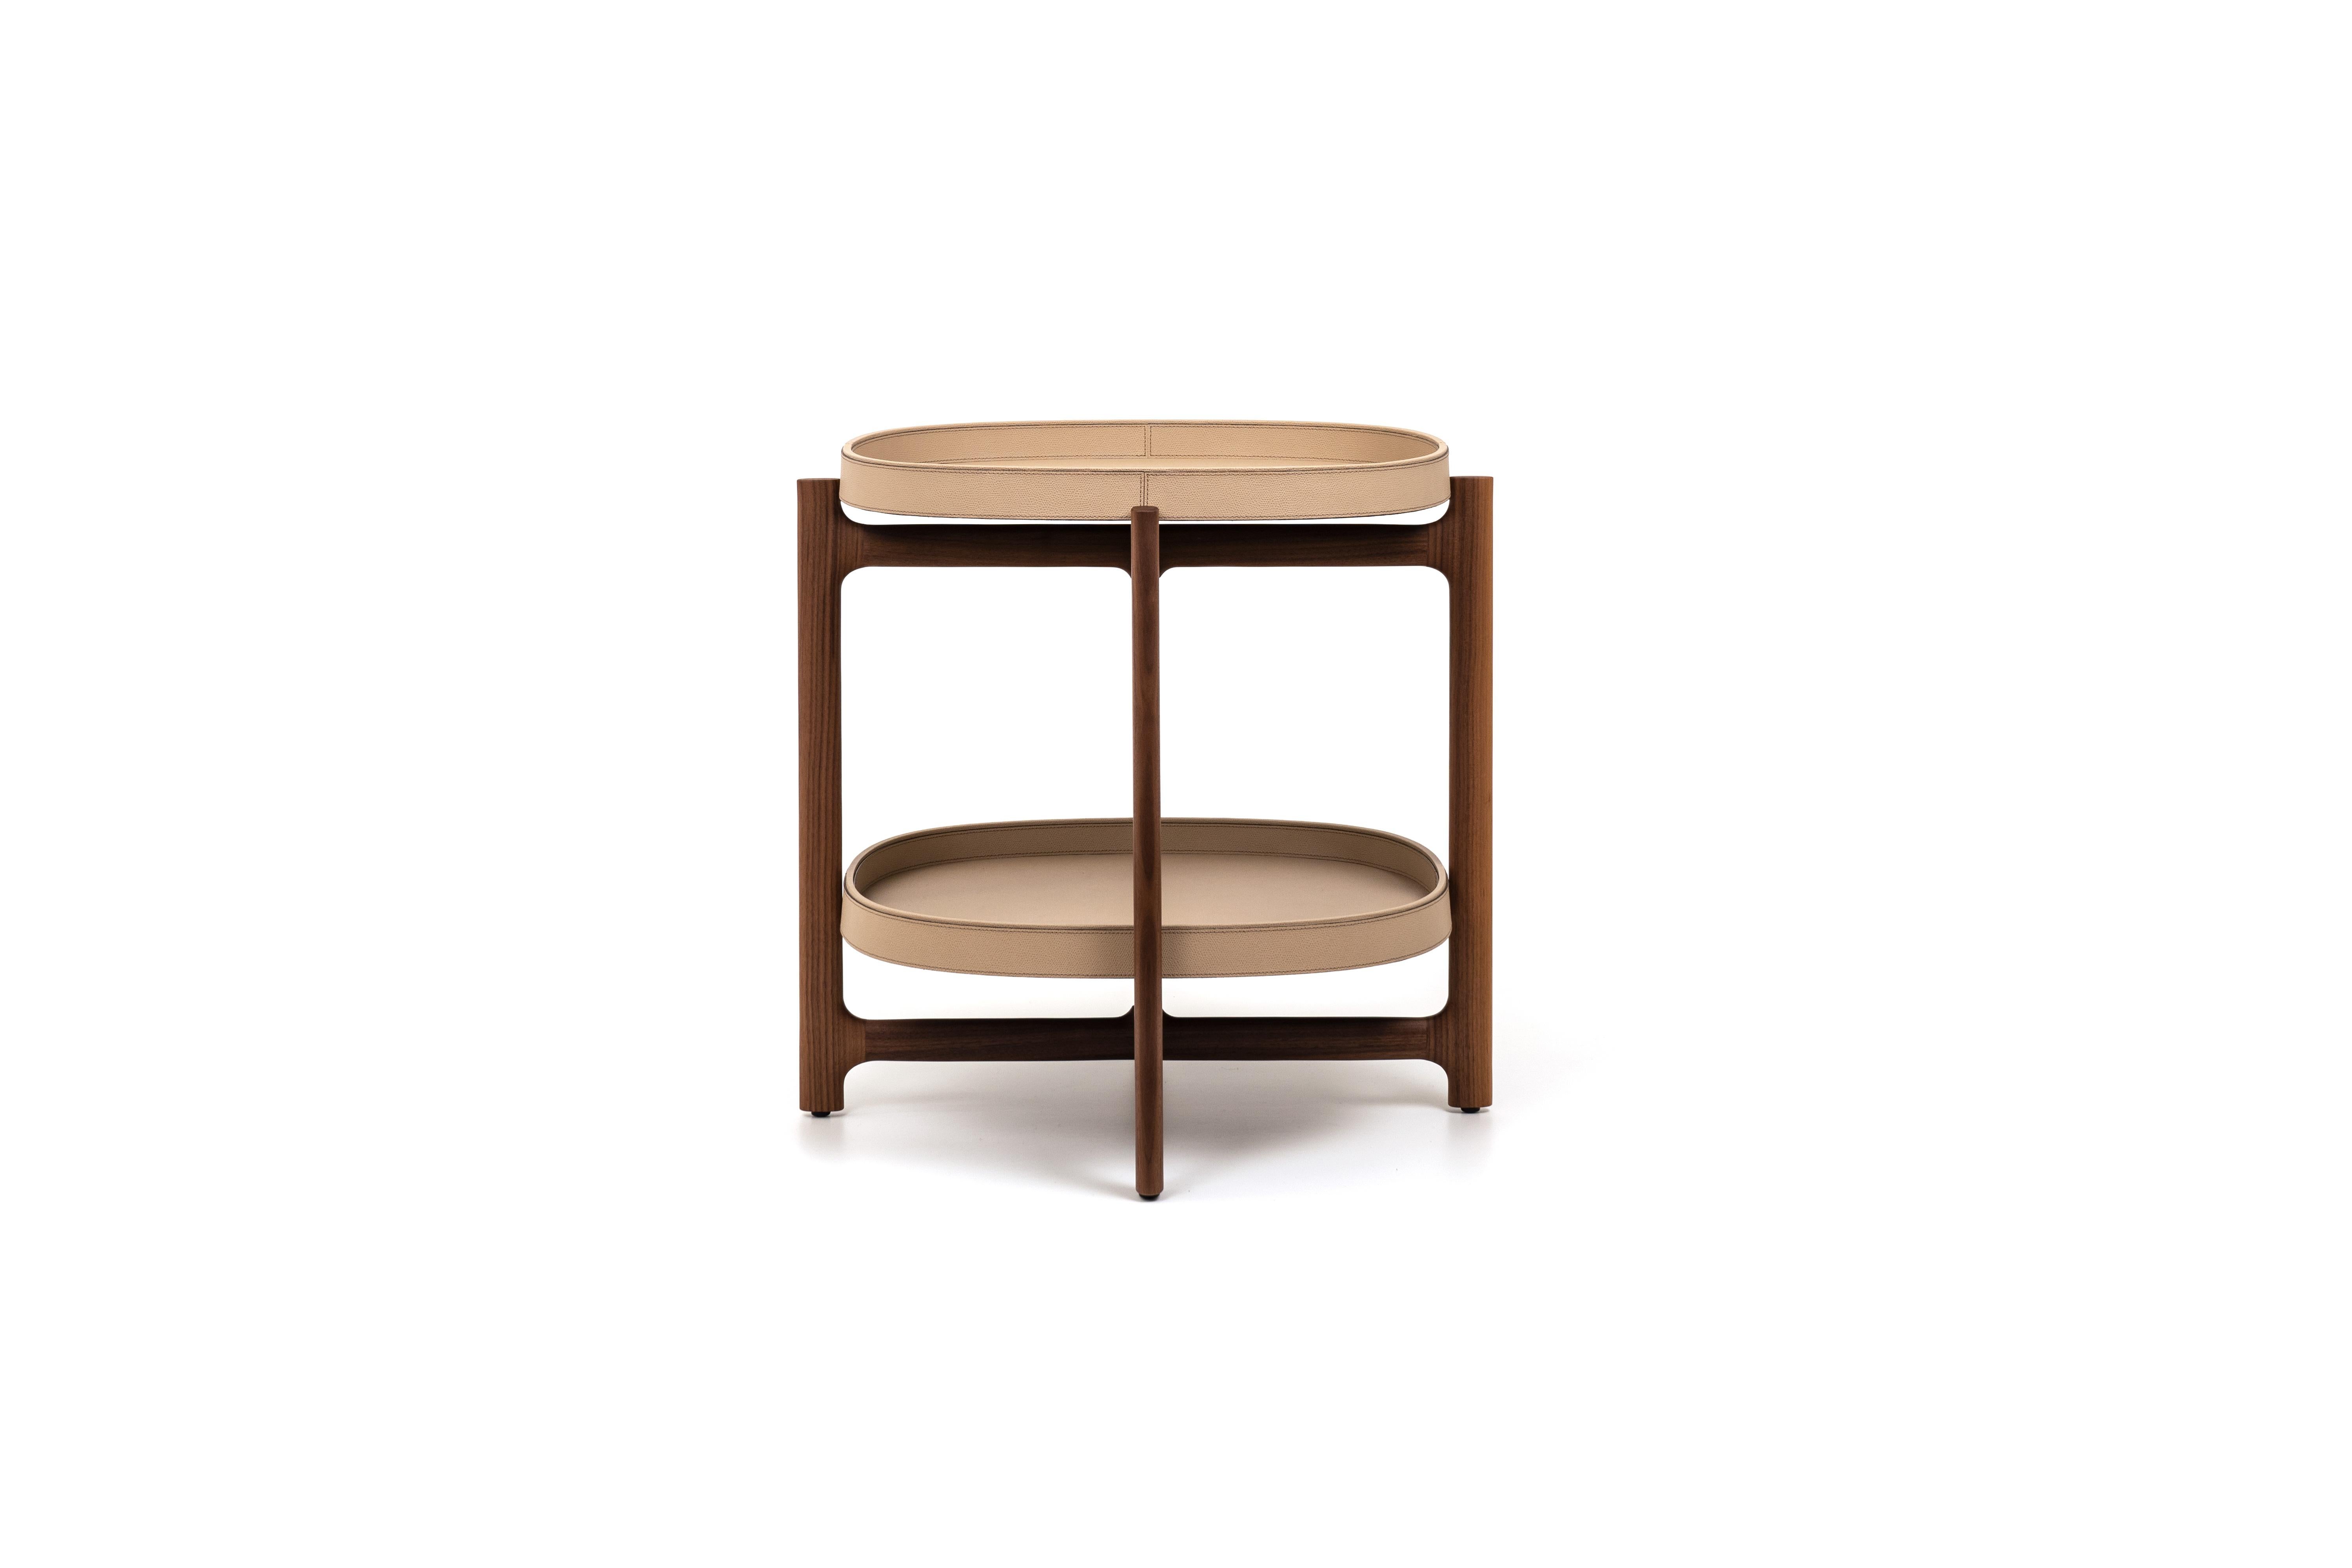 Cette ligne de tables d'appoint est l'une des dernières collections de Pinetti. Les tables pliantes Chelsea sont fabriquées en bois de noyer et comportent 2 plateaux amovibles, en cuir italien exquis.  

Grâce à ses plateaux amovibles, qui peuvent